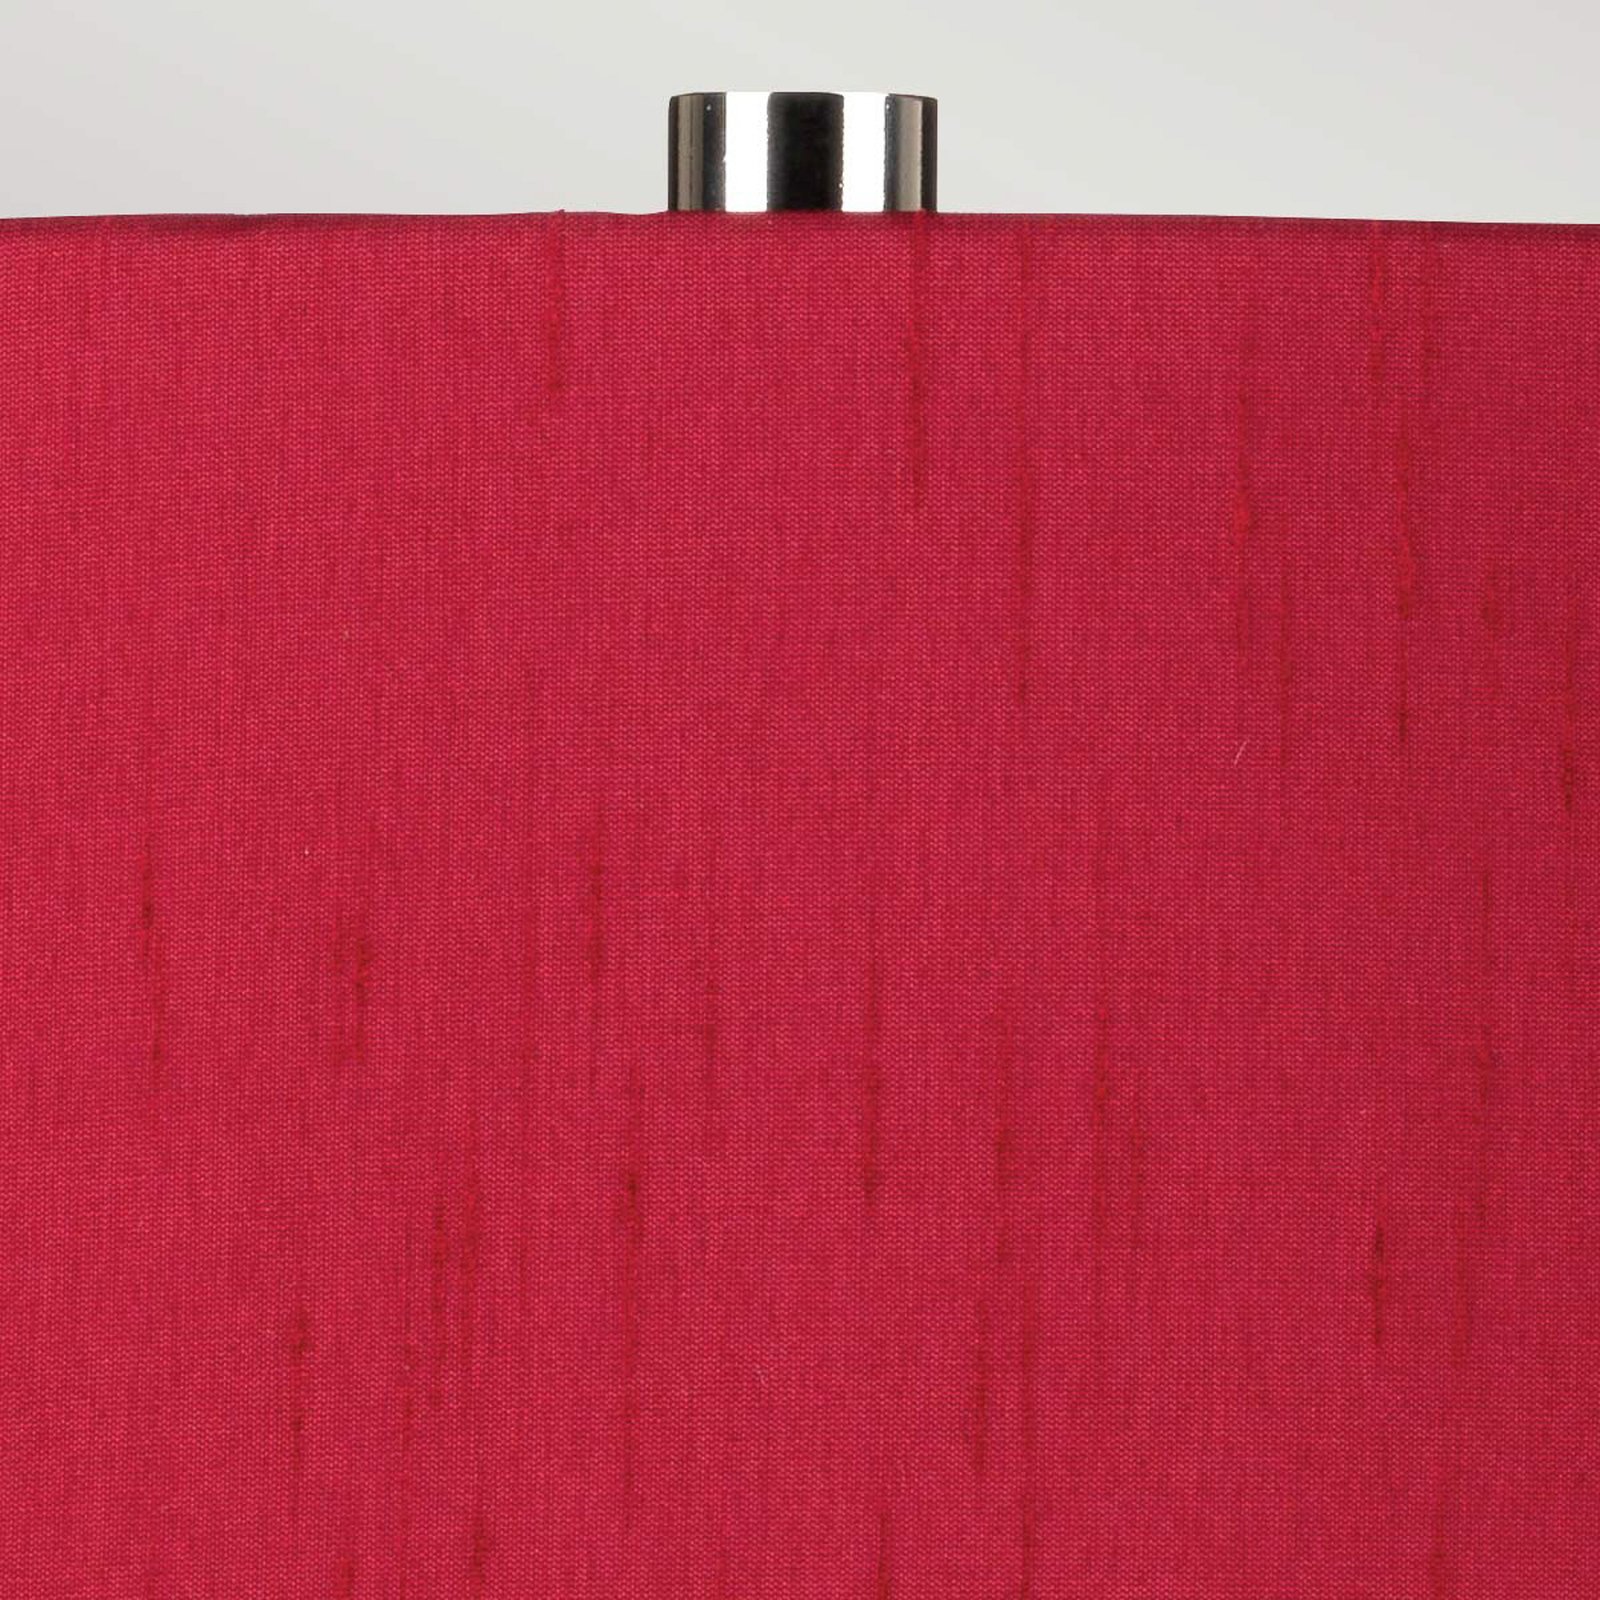 Textil-Tischlampe Isla nickel poliert/rot